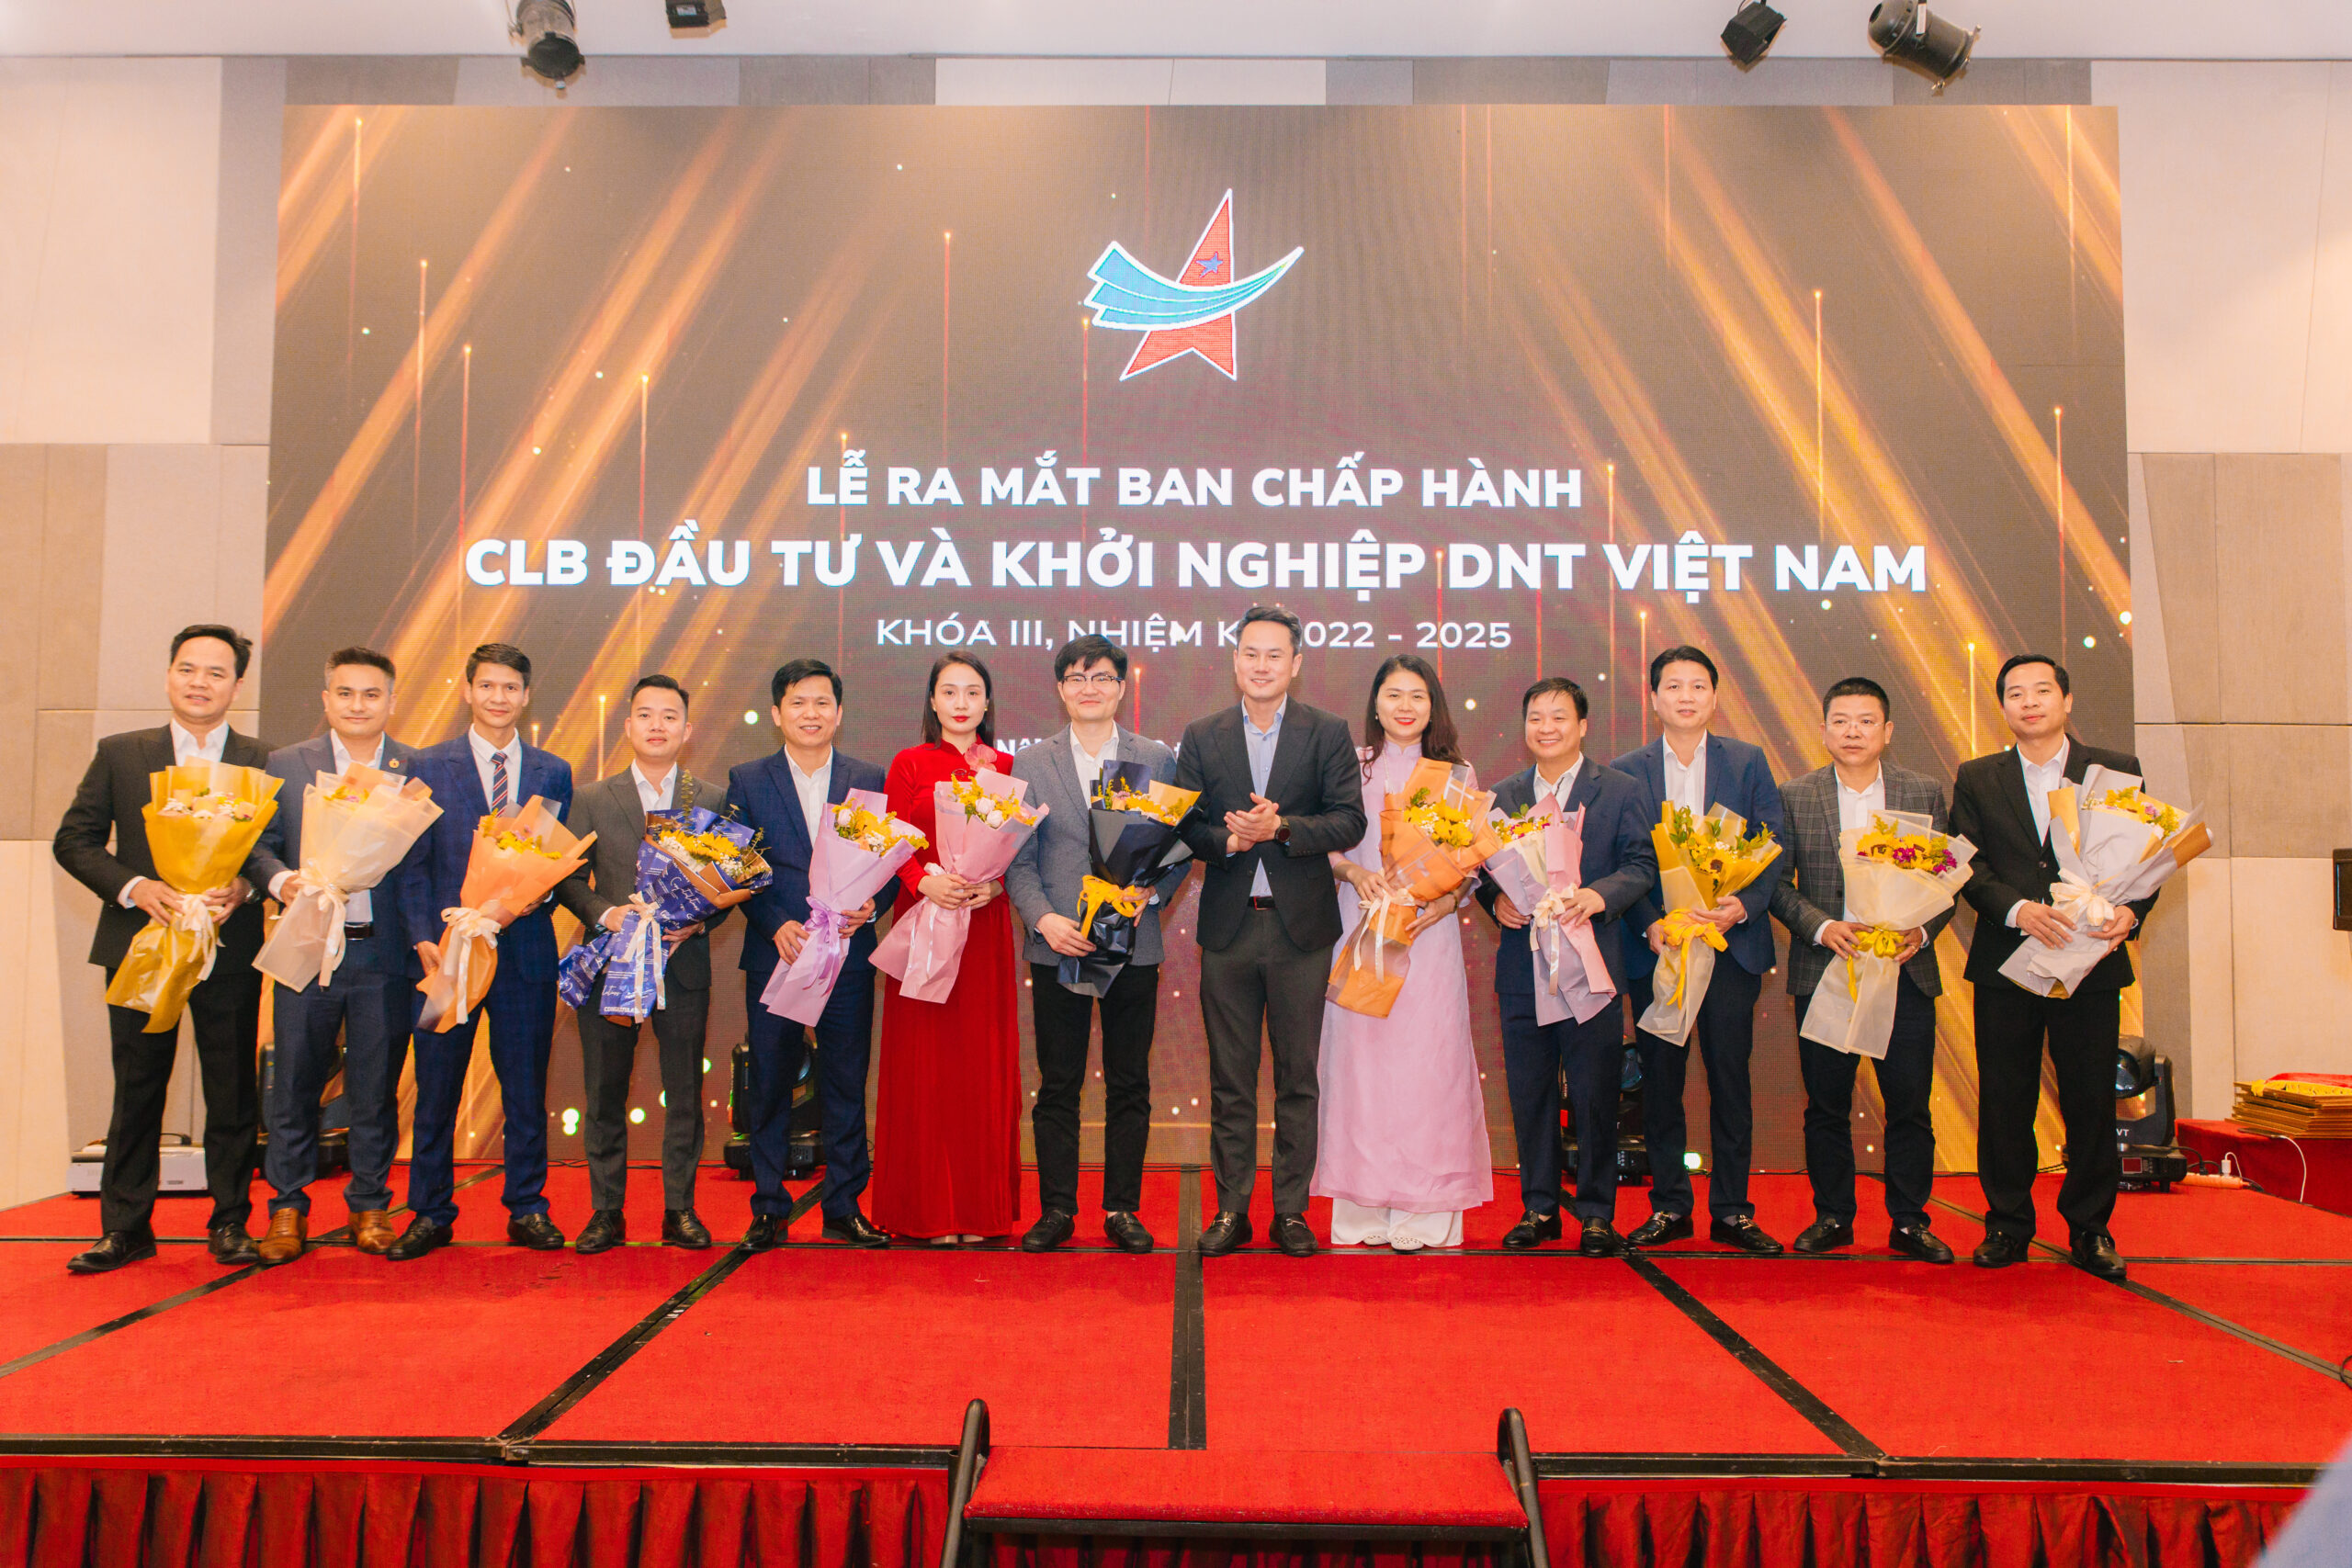 Phó chủ tịch thường trực Hội LHTN Việt Nam Nguyễn Kim Quy tặng hoa chúc mừng Thường trực CLB khóa III.